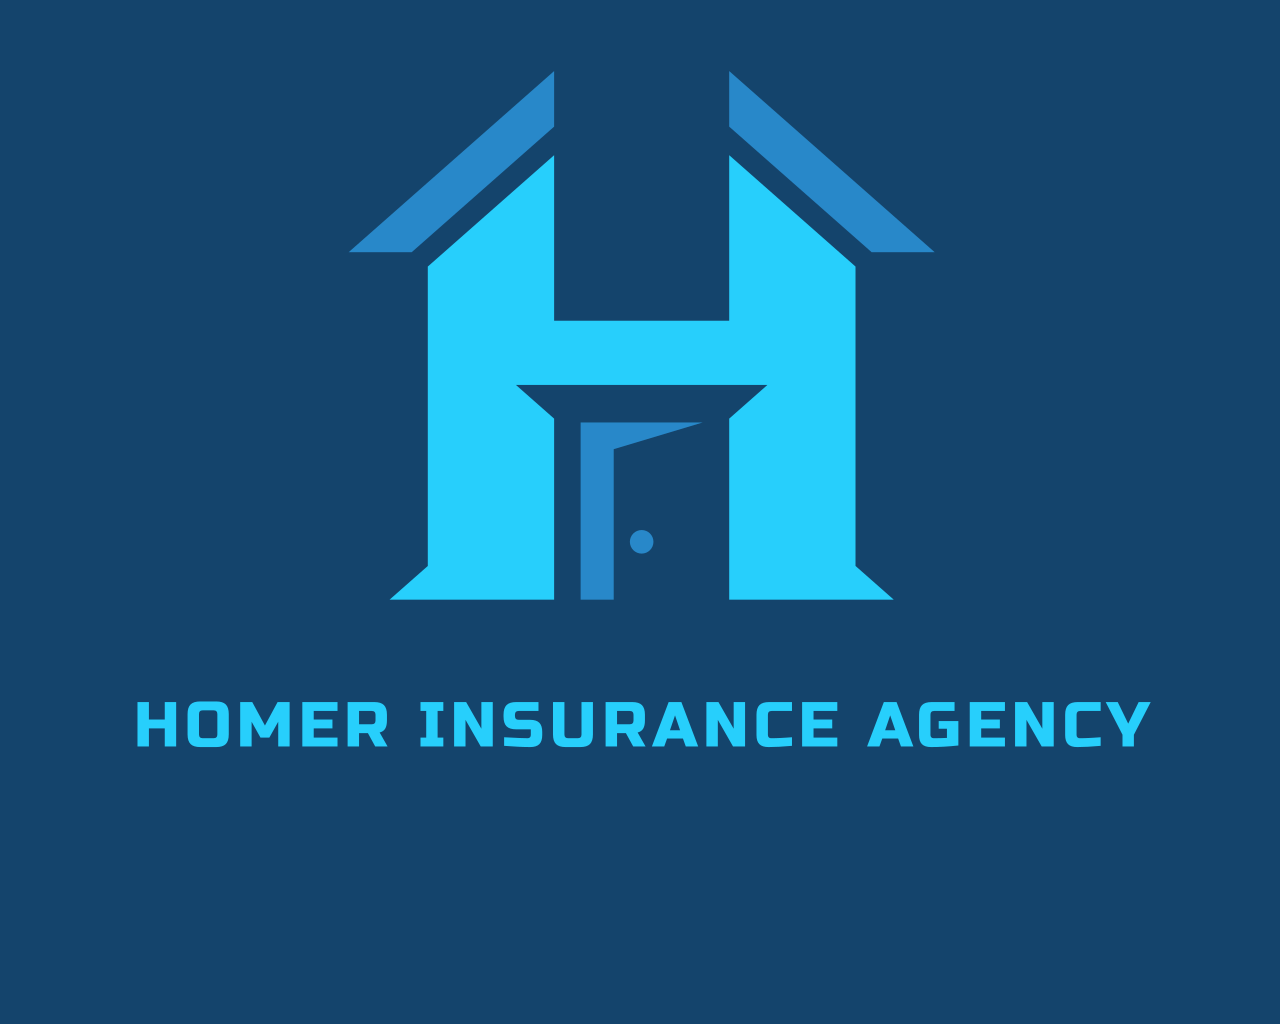 Homer Insurance Agency